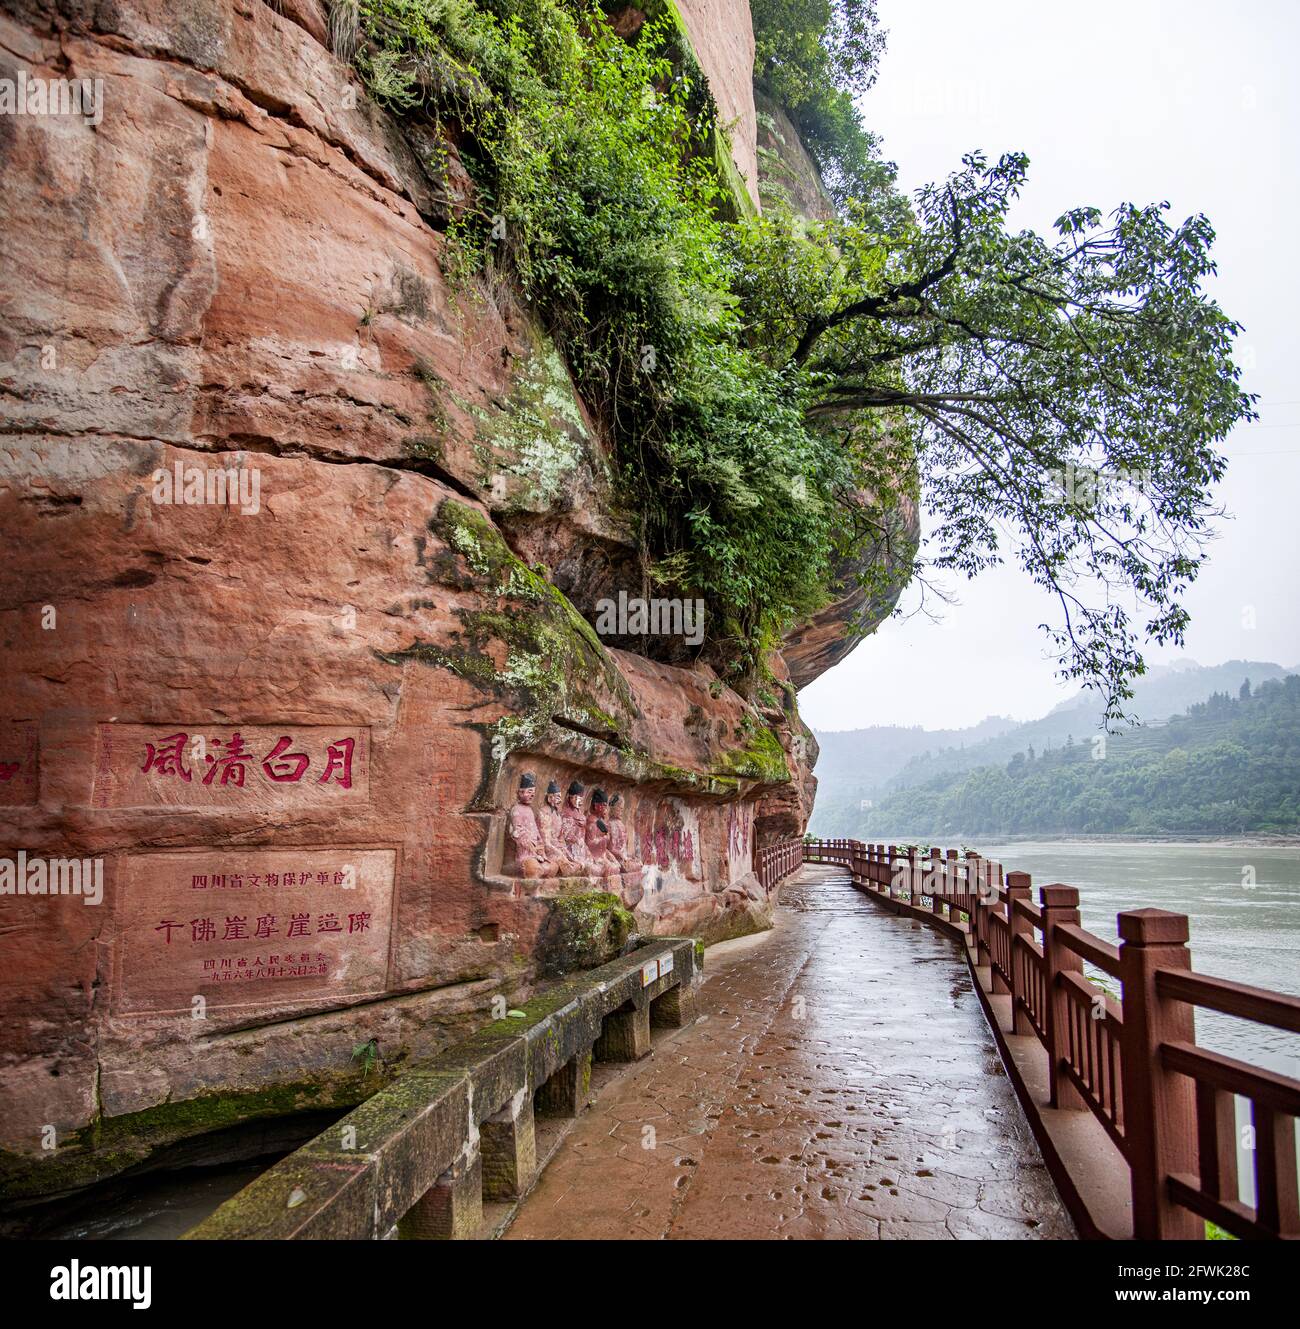 Sichuan leshan jiajiang thousand-buddha rock cliff stone carvings Stock Photo